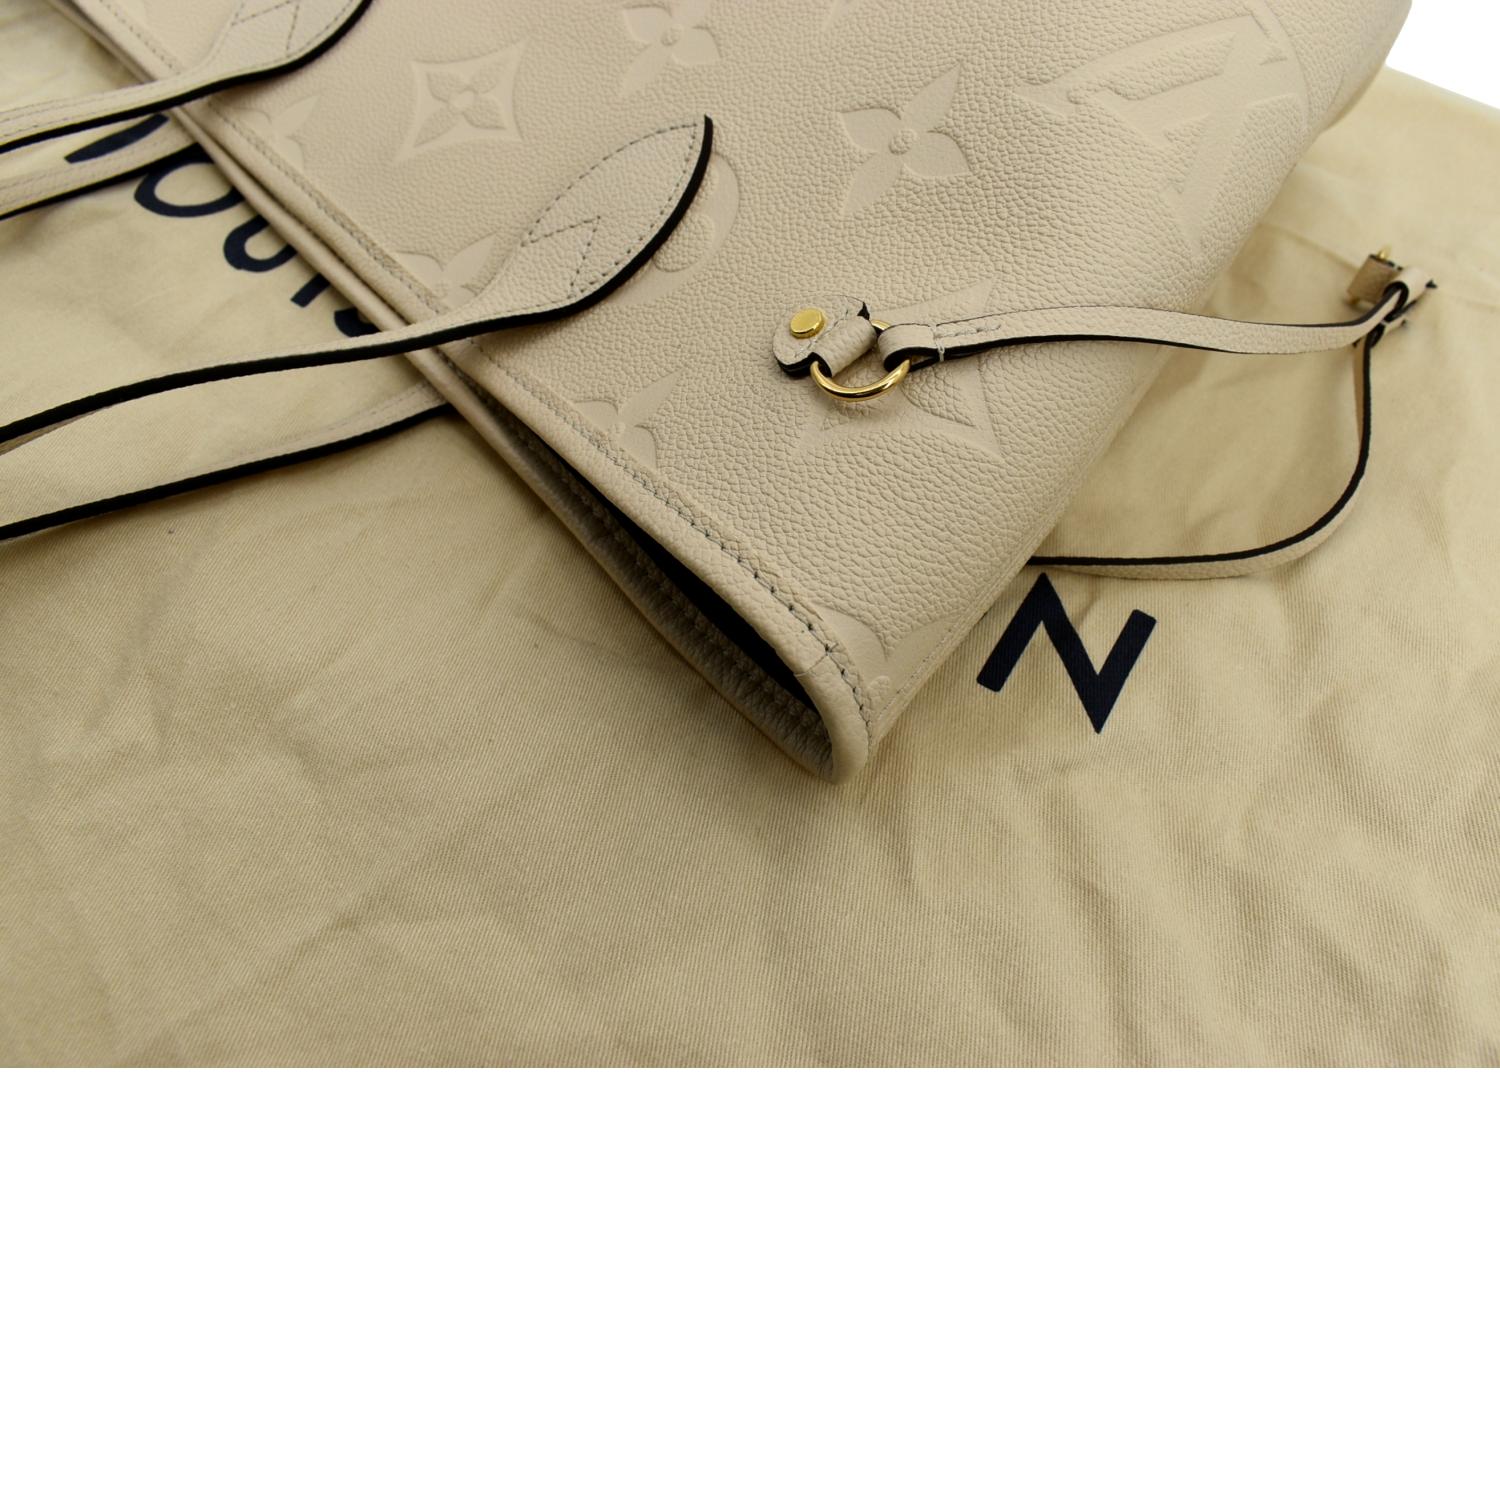 Louis Vuitton Neverfull MM Monogram Empriente Cream/Black